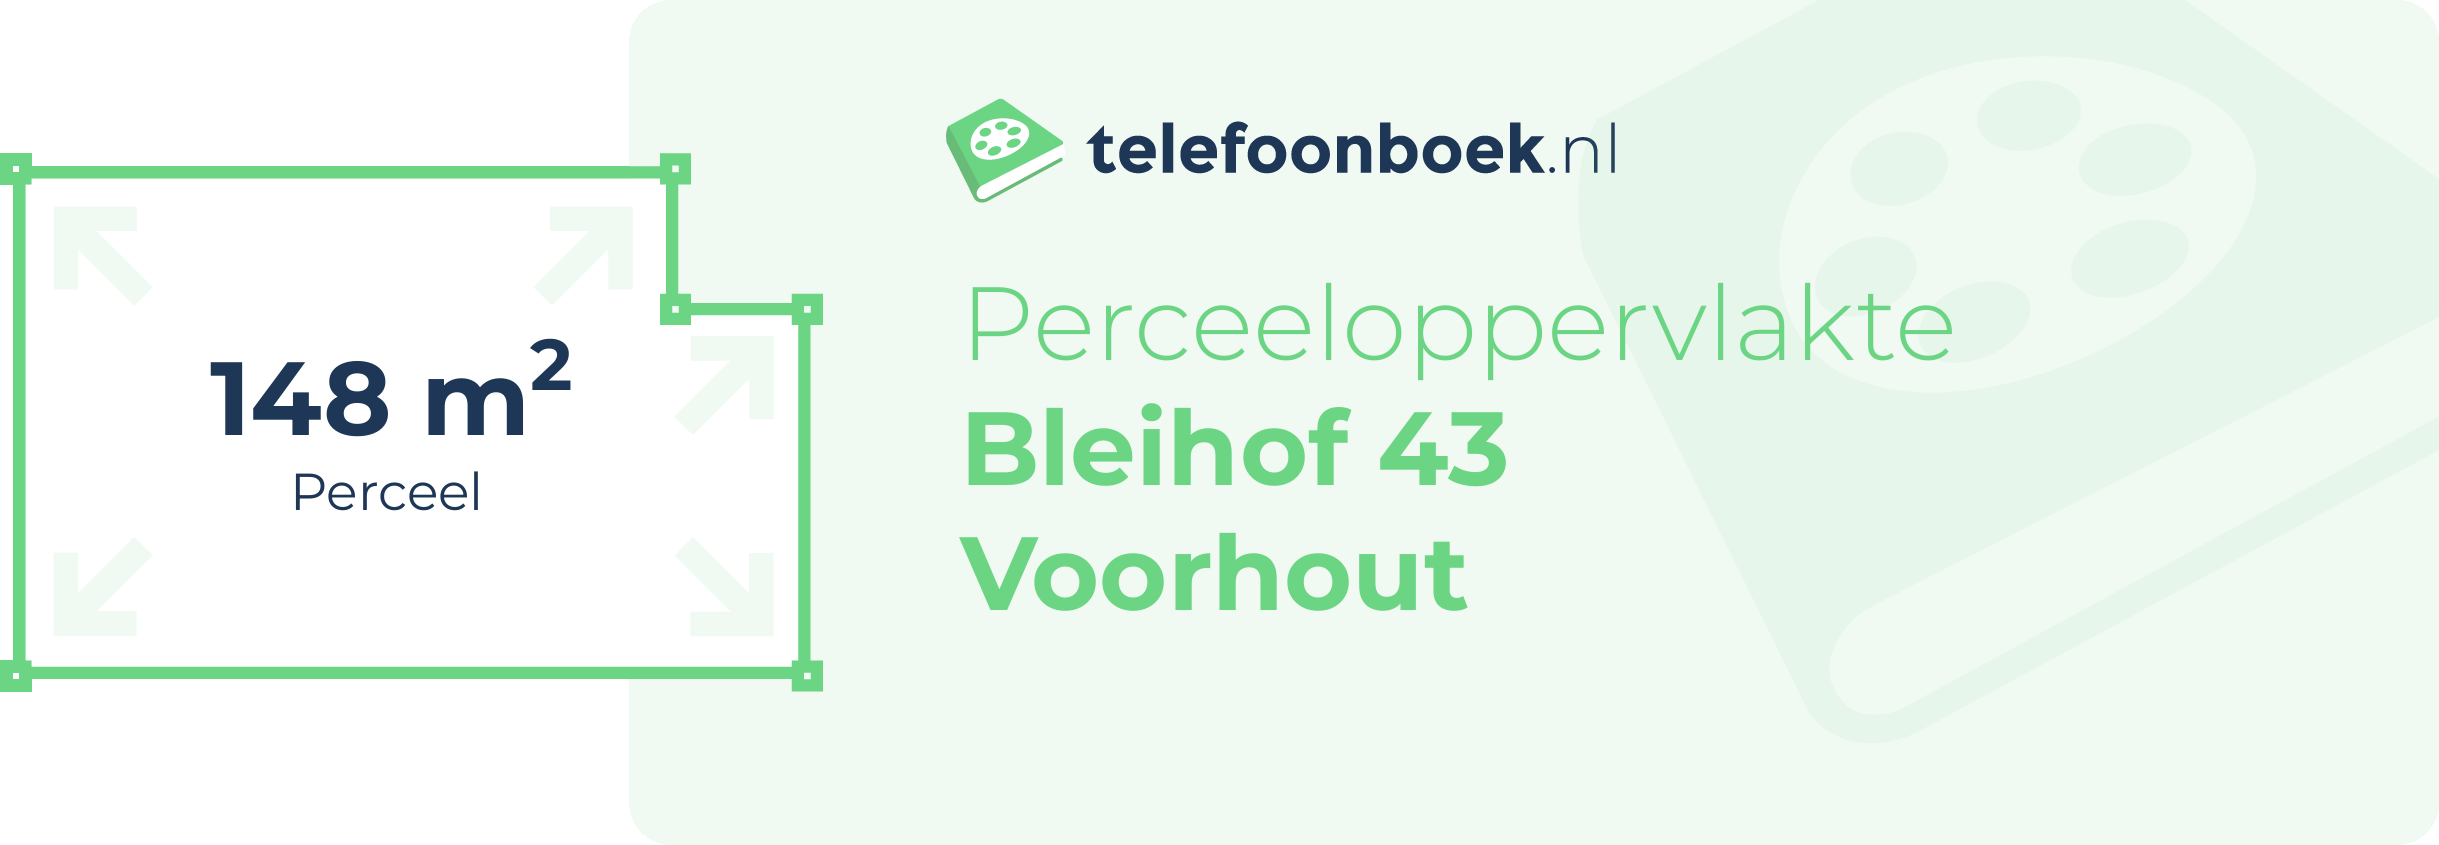 Perceeloppervlakte Bleihof 43 Voorhout